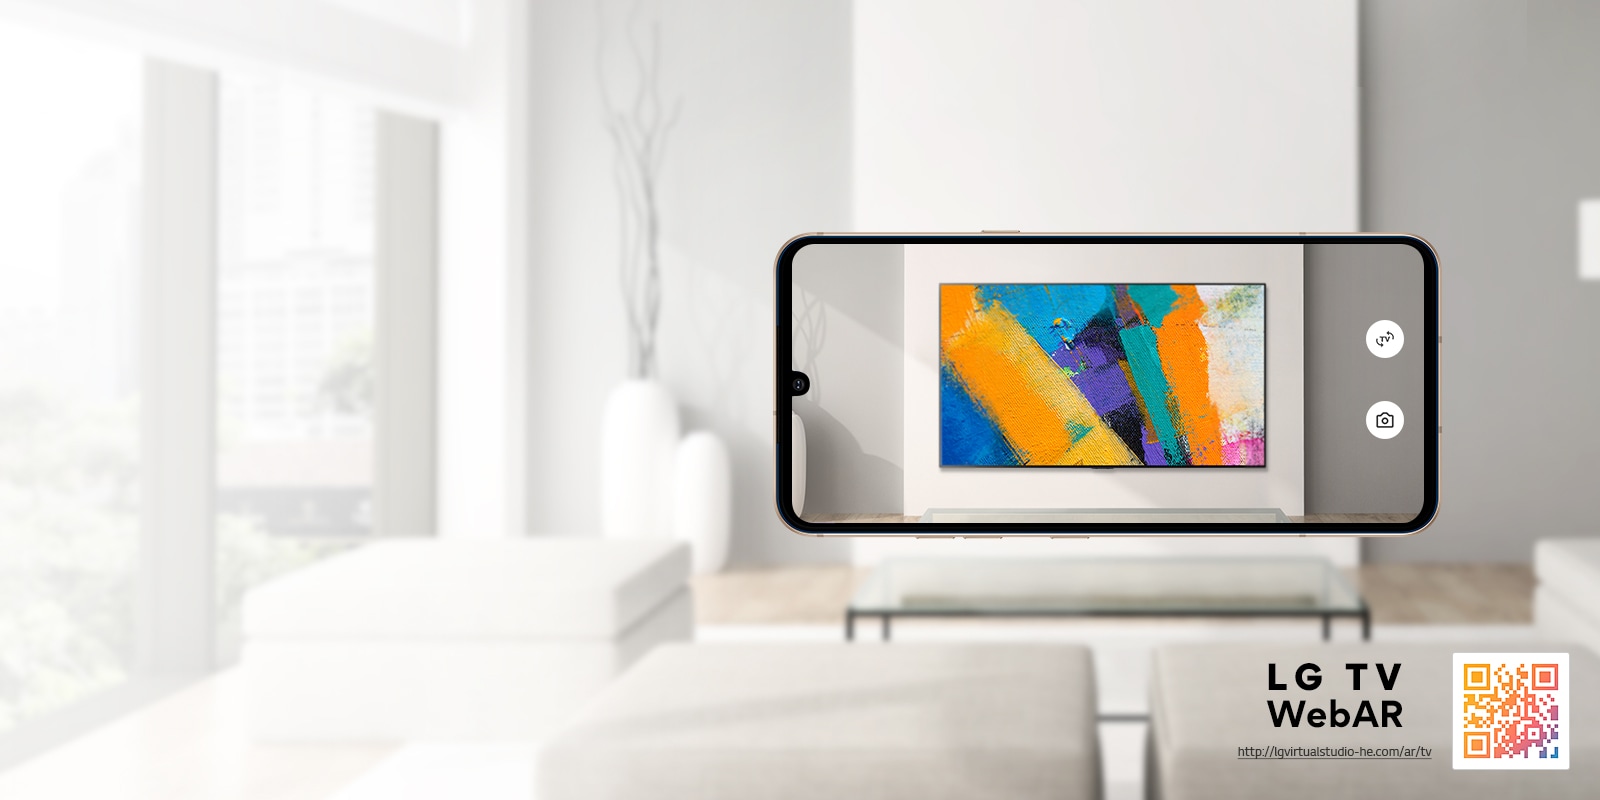 Dies ist ein Web-AR-Simulationsbild eines LG OLED TV. Ein eingeblendetes Mobiltelefon, das gerade ein Foto macht, wird in einem minimalistisch eingerichteten Raum angezeigt. Unten rechts befindet sich ein QR-Code.